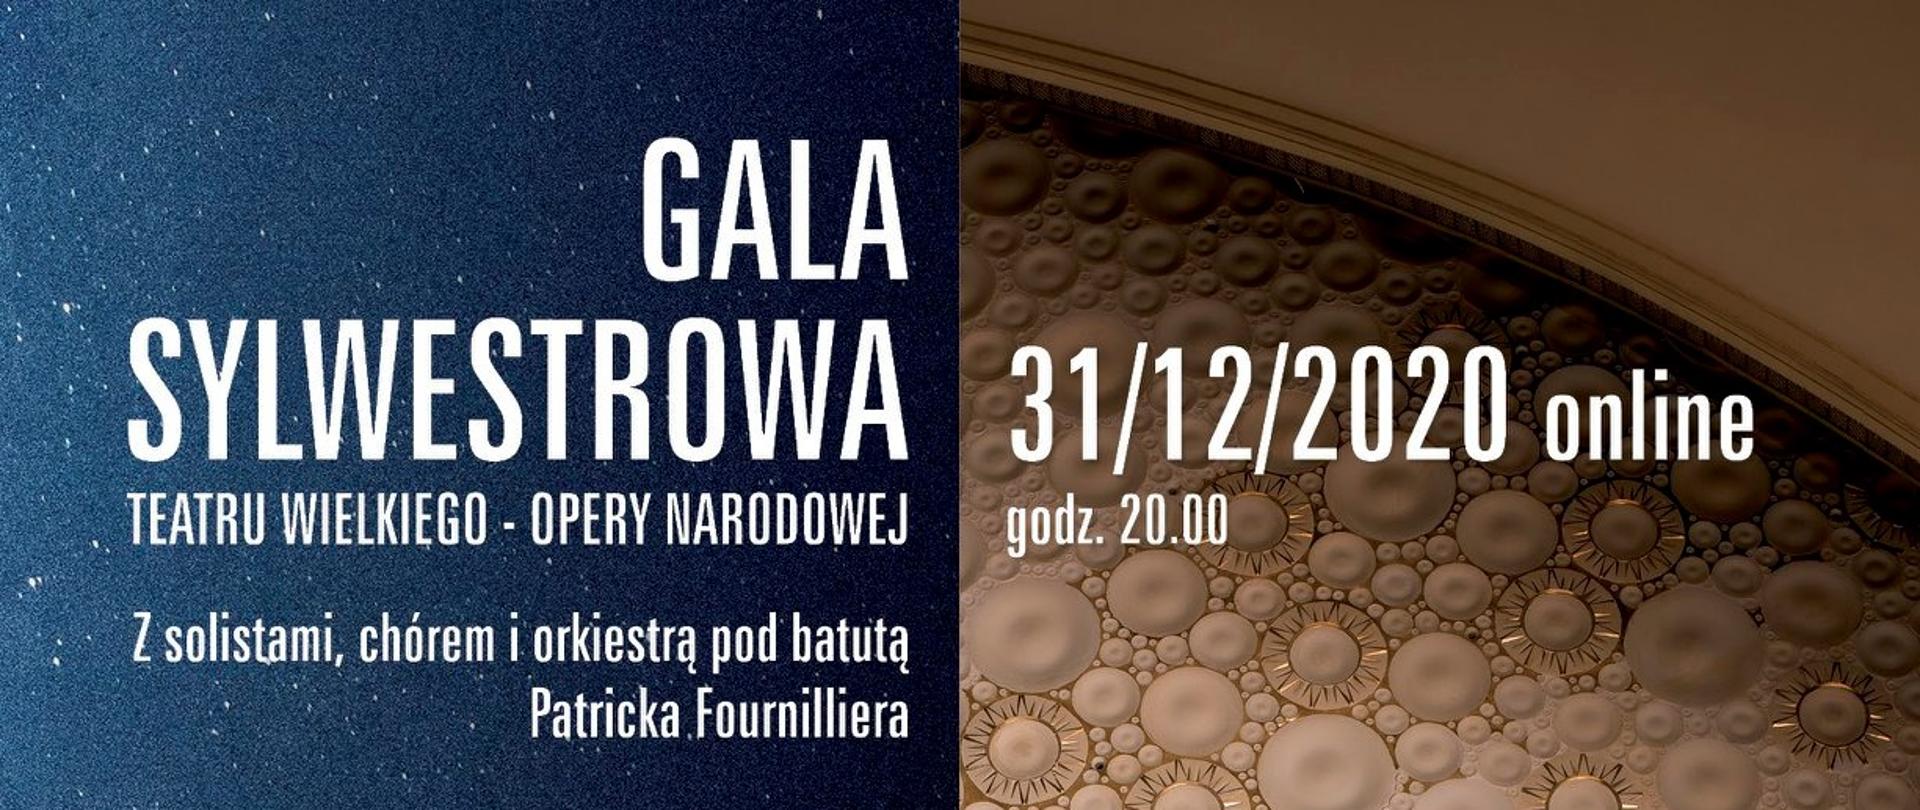 Gala Sylwestrowa - Teatr Wielki Opera Narodowa